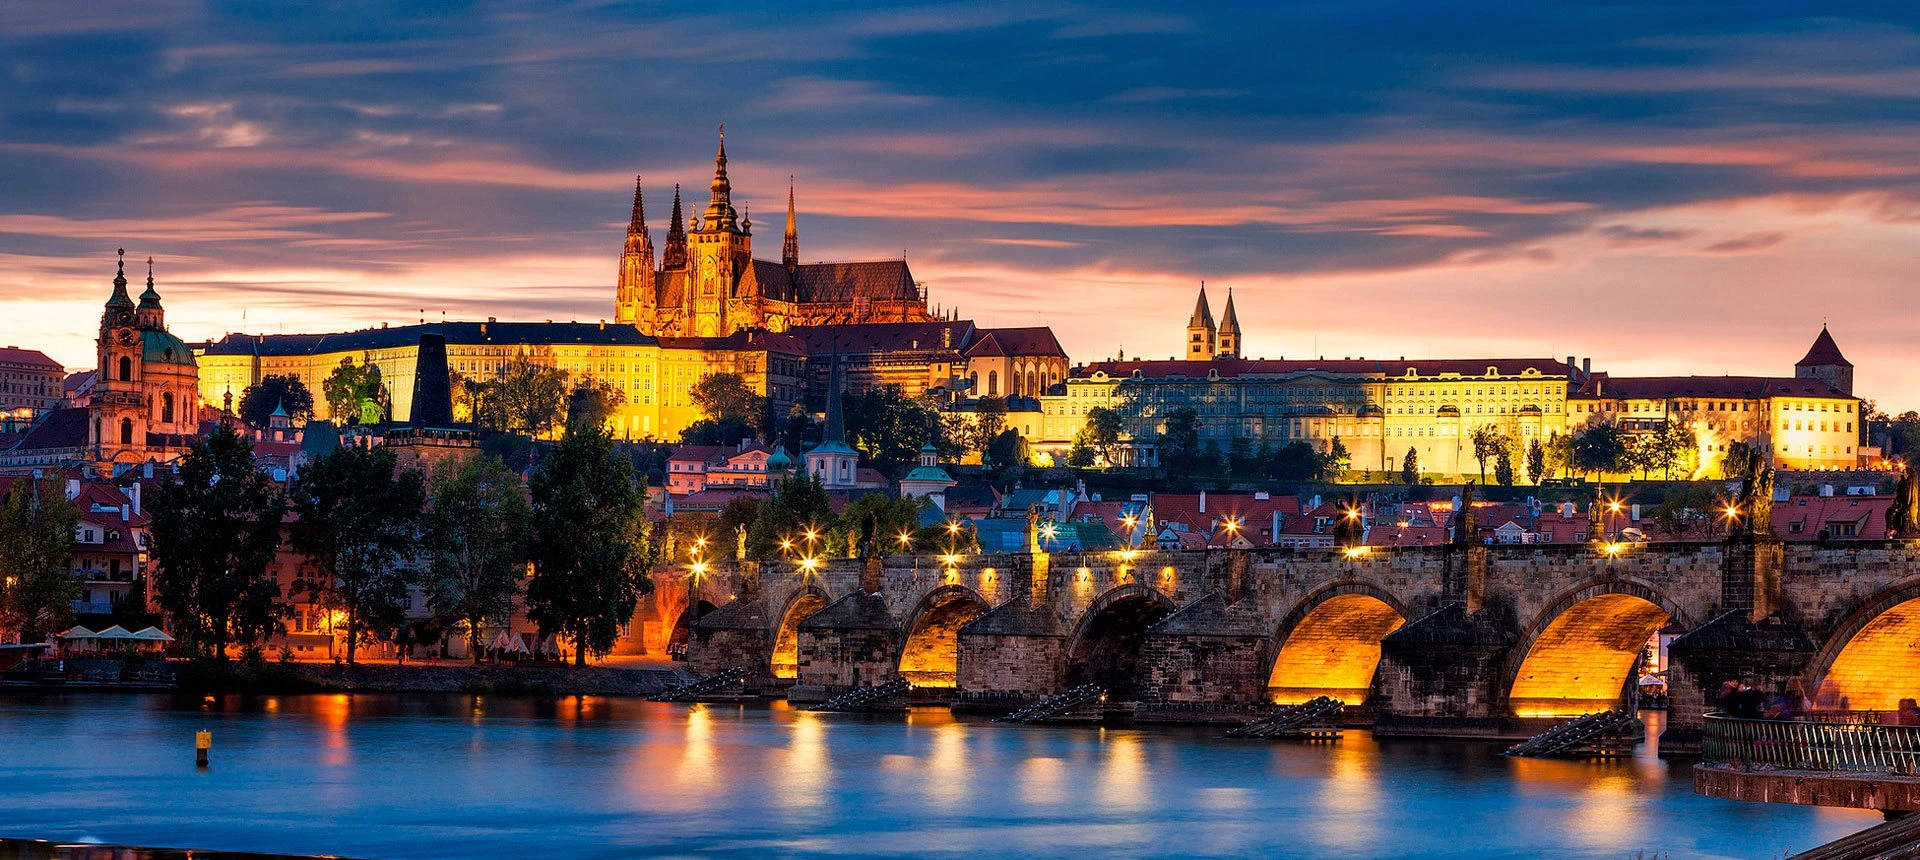 La bella ciudad de Praga: un destino fascinante